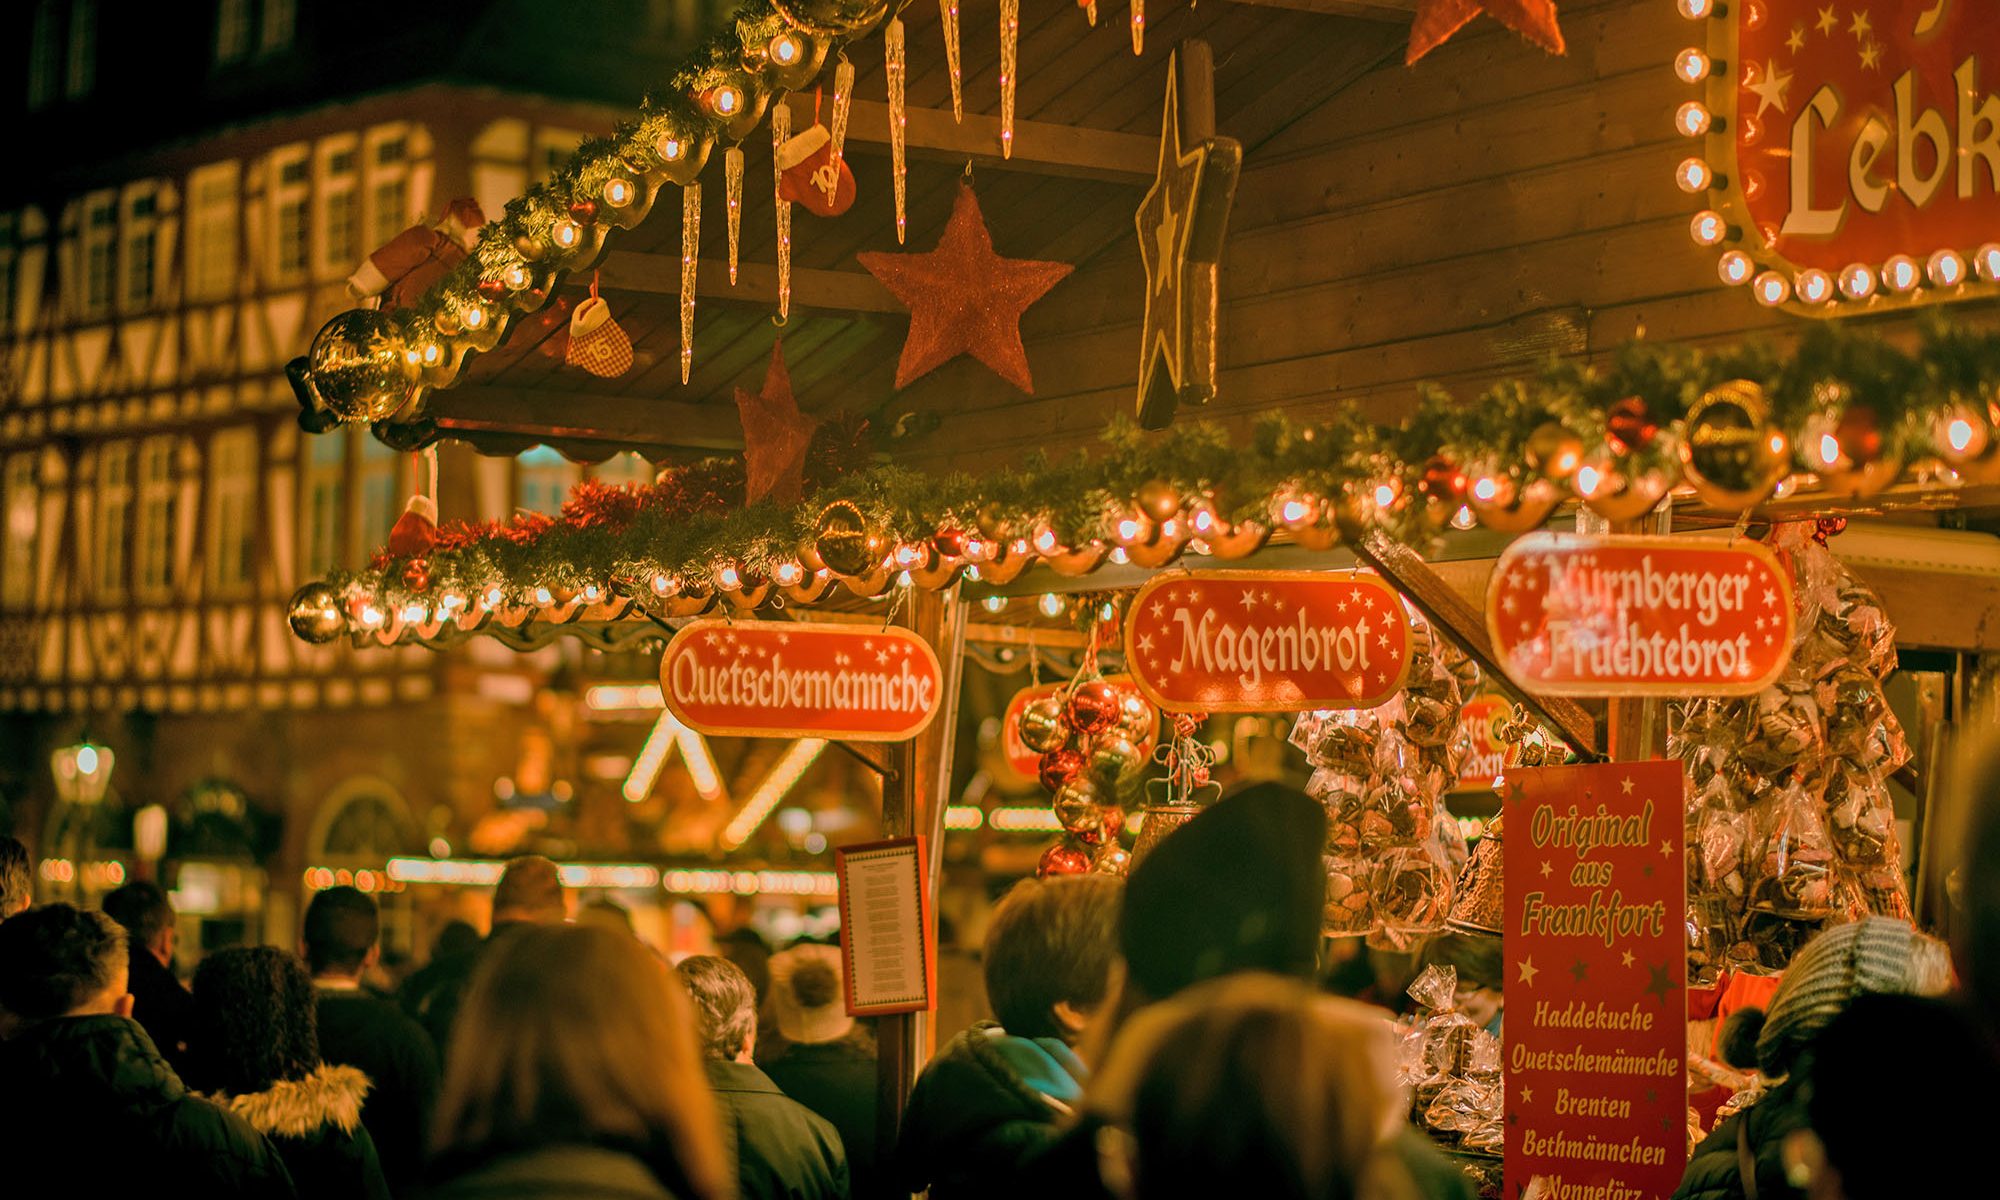 Festliche Weihnachtsmärkte stehen bei Flusskreuzfahrten im Advent auf der Agenda